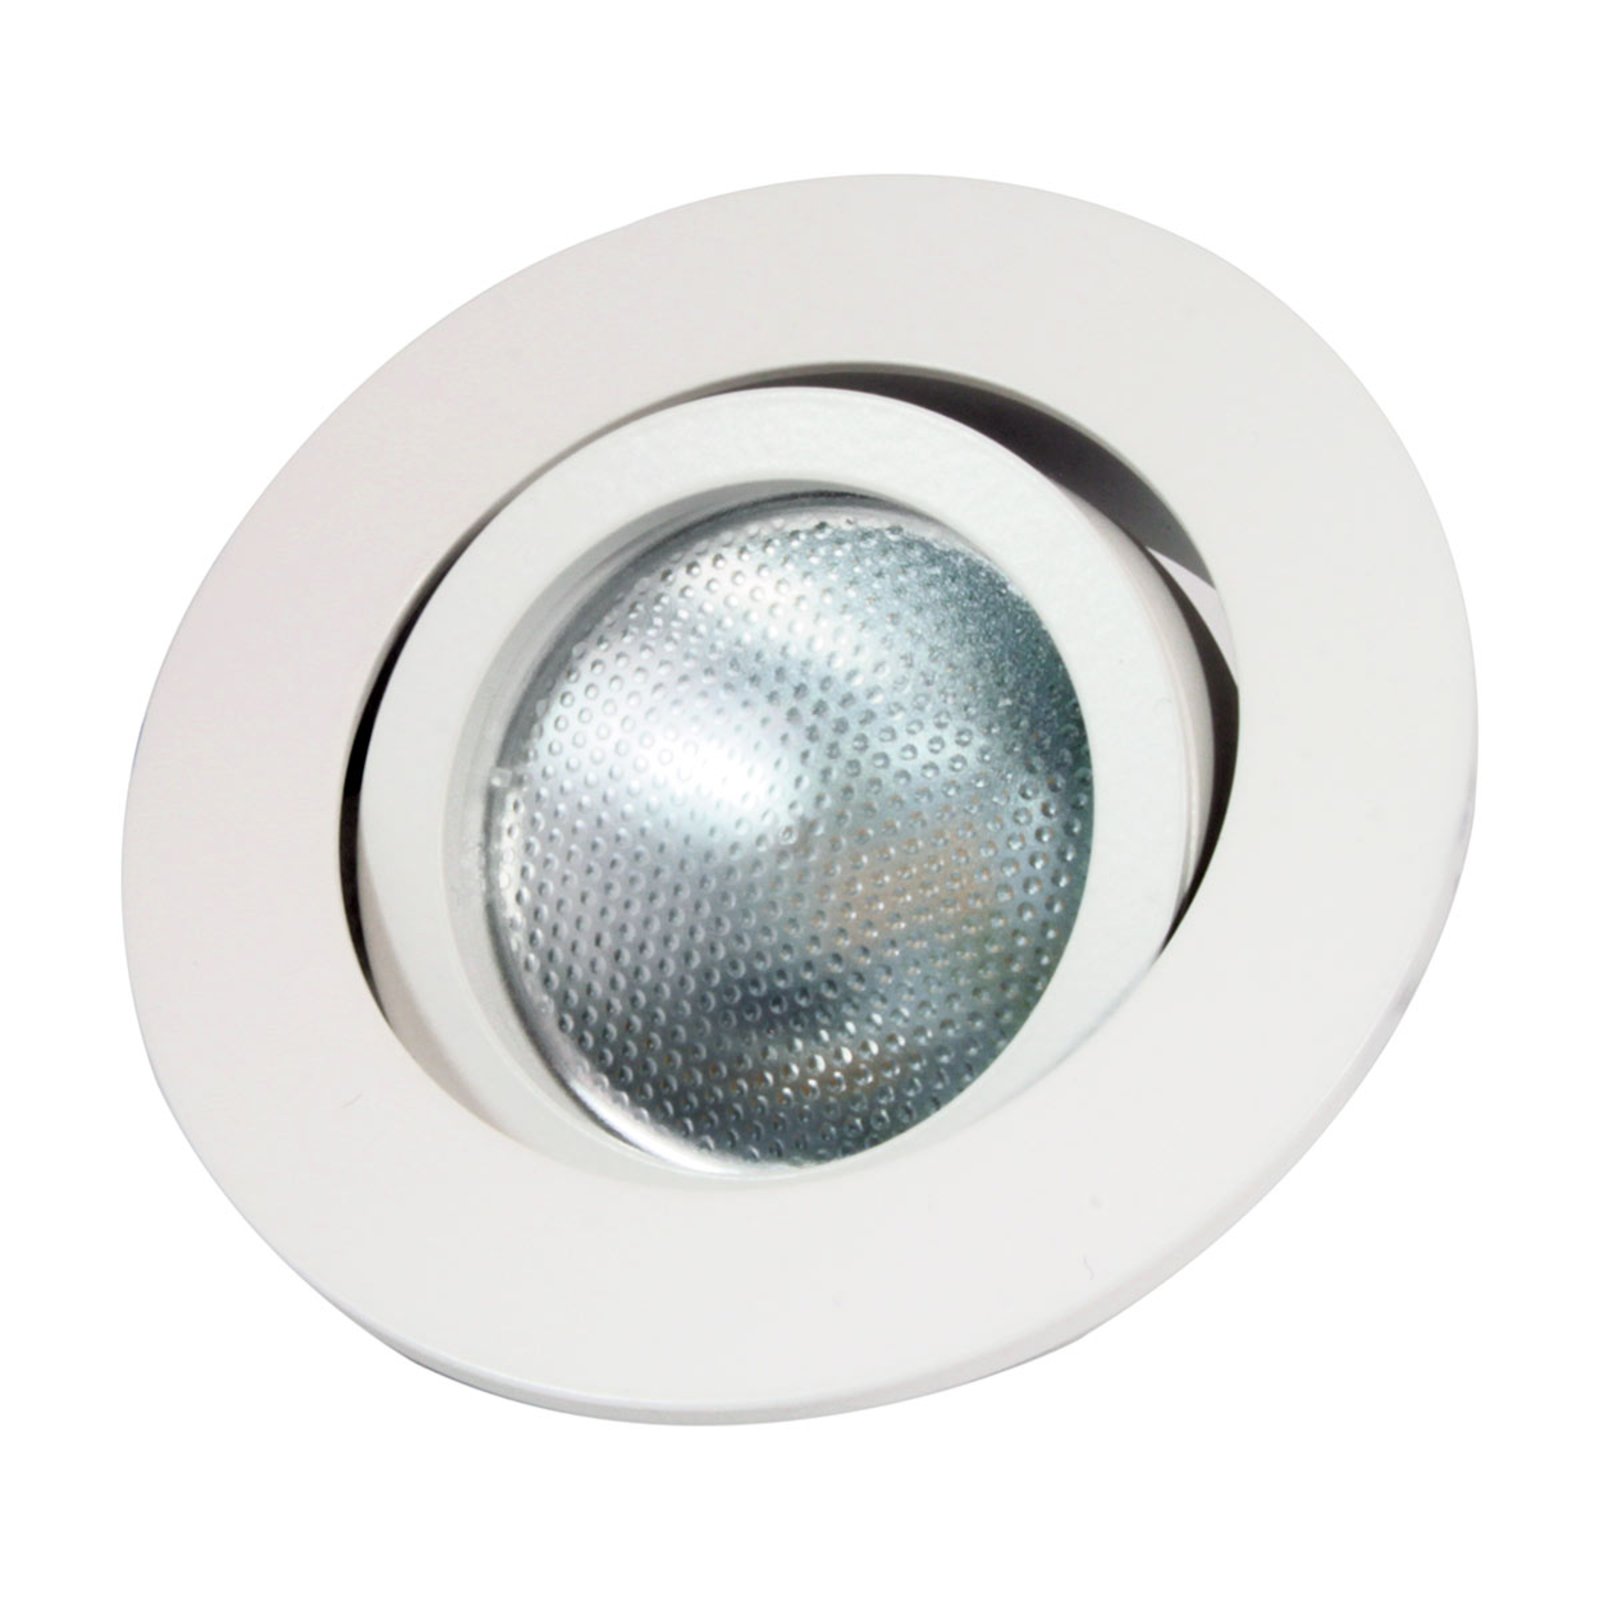 LED inbouwspot GU10.3, rond, wit